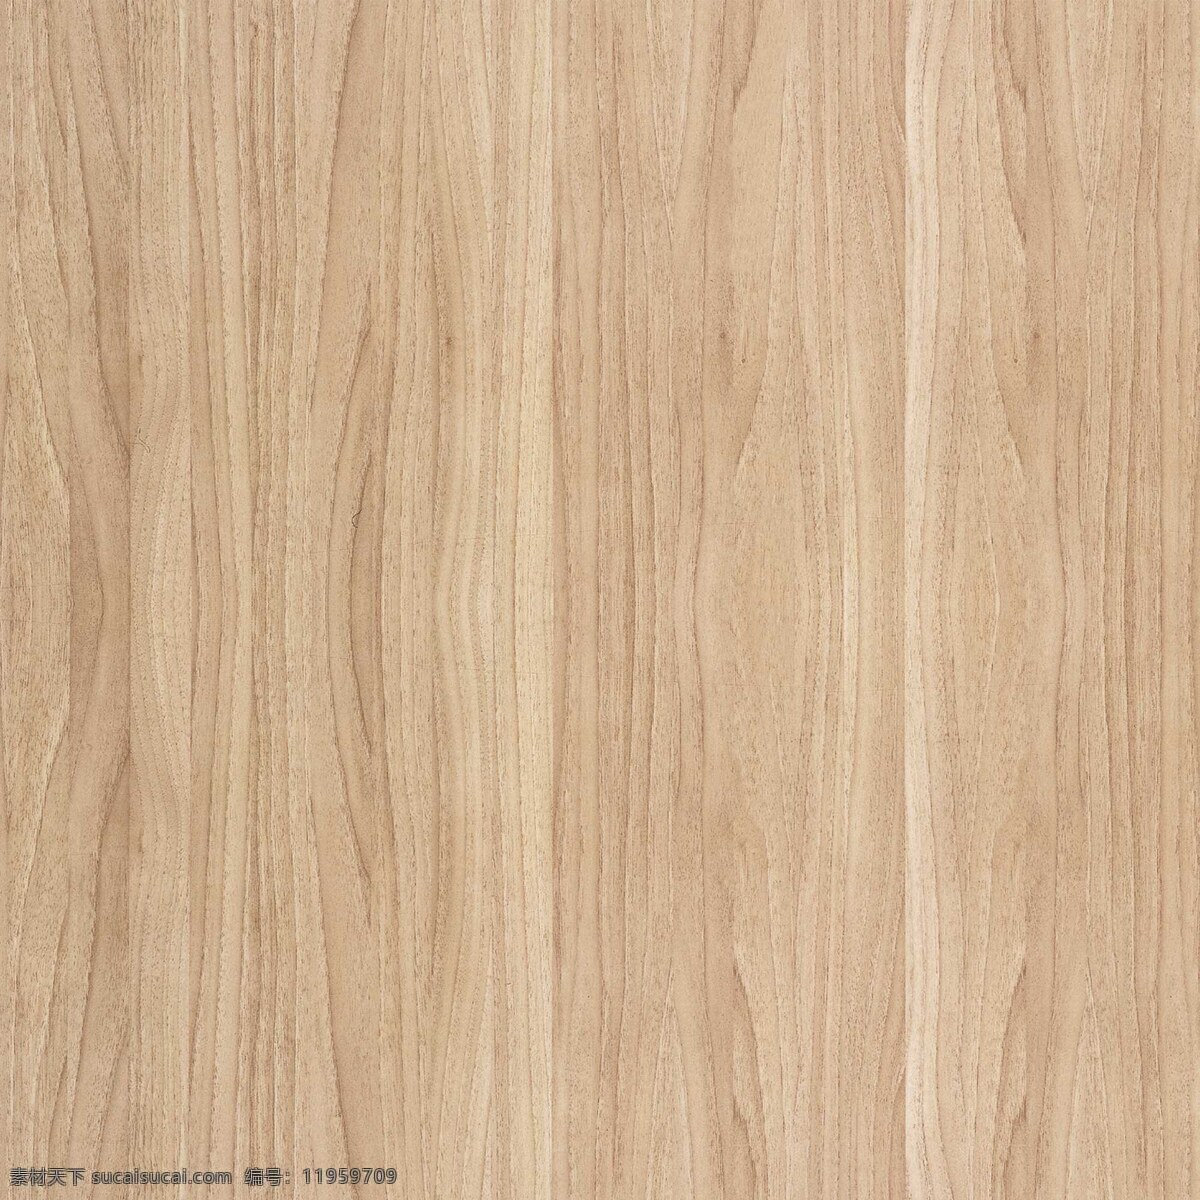 浅色木纹 3d材质 3d后期 3d贴图 材质 地板 木头 木纹 实木 室内效果图 贴图 效果图素材 效果图后期 装修效果图 装潢 效果图 家居装饰素材 室内设计